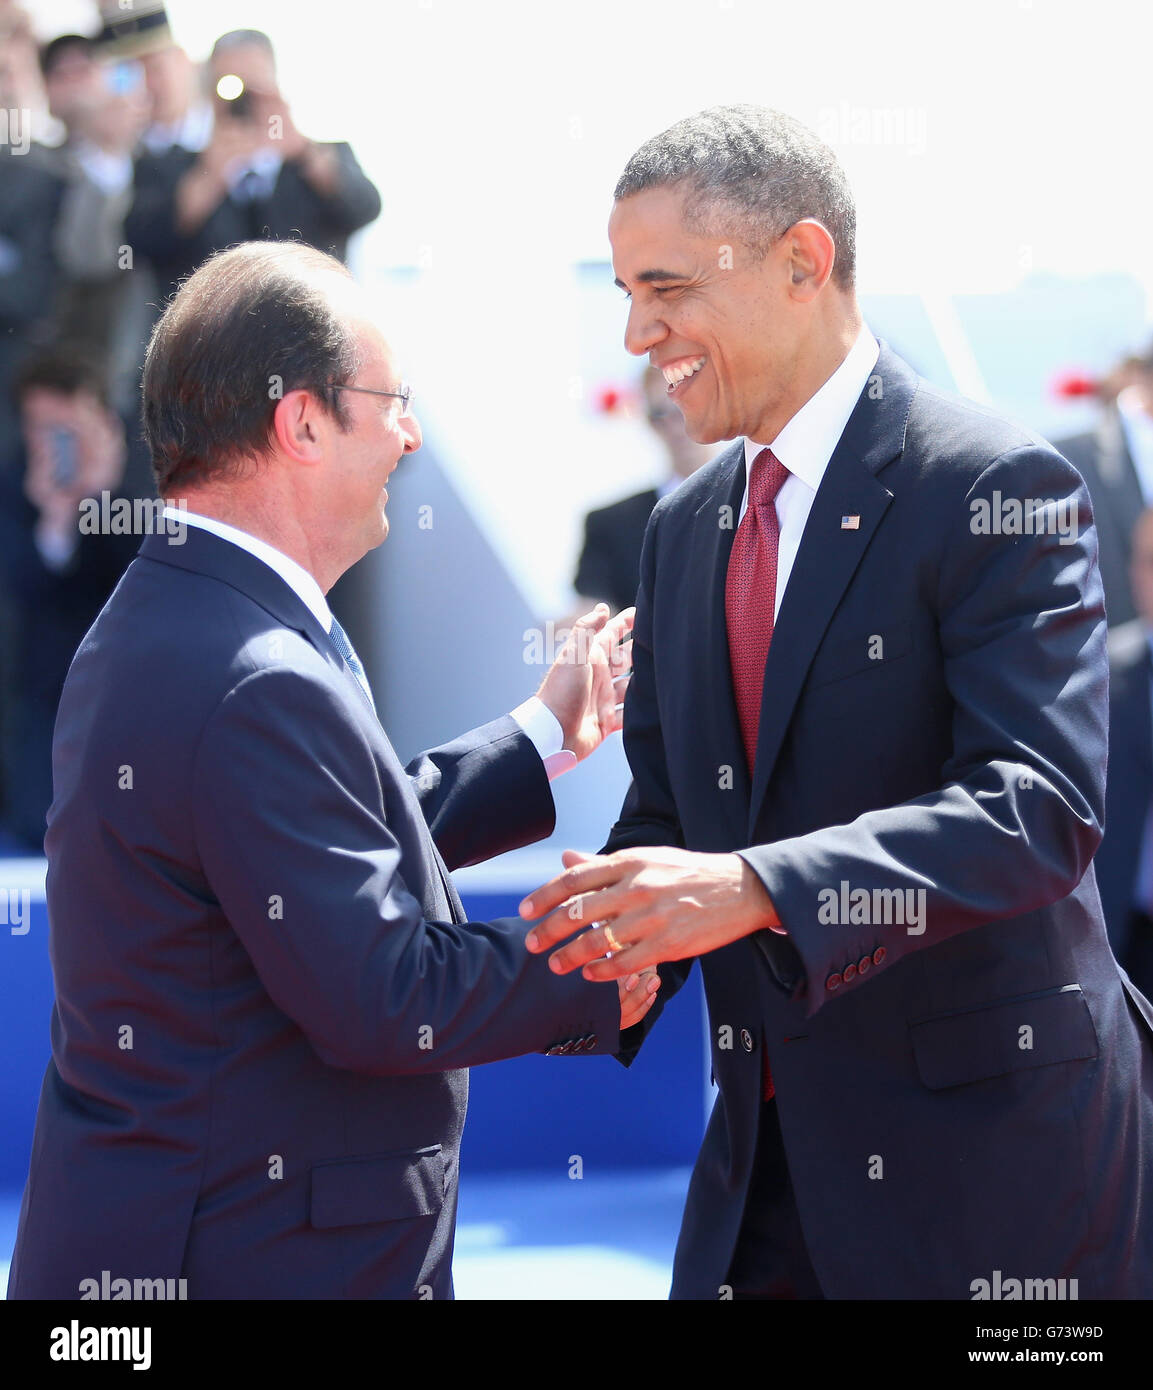 Präsident Barak Obama der Vereinigten Staaten begrüßt den französischen Präsidenten Francois Hollande während einer internationalen Zeremonie mit den Staatschefs am Sword Beach in der Normandie zum 70. Jahrestag der Landungen des D-Day. Stockfoto